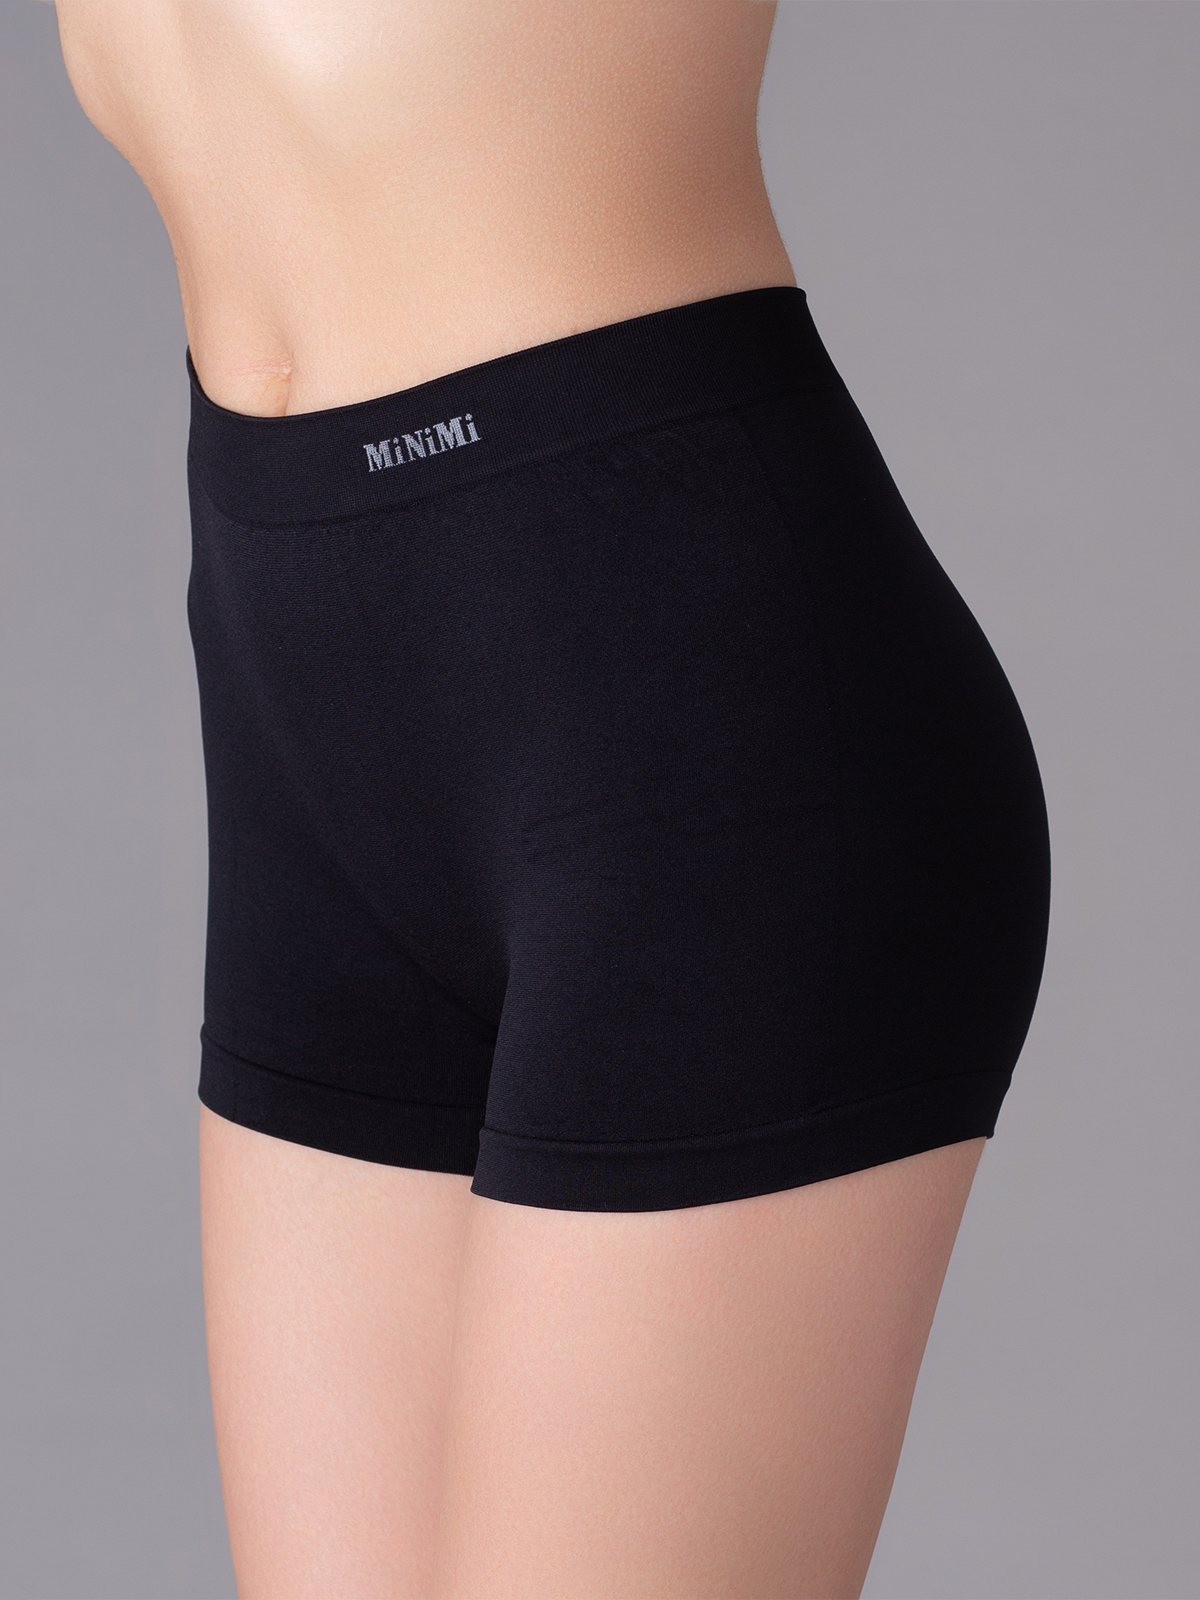 Трусы женские Minimi Basic MA 270 shorts черные S/M